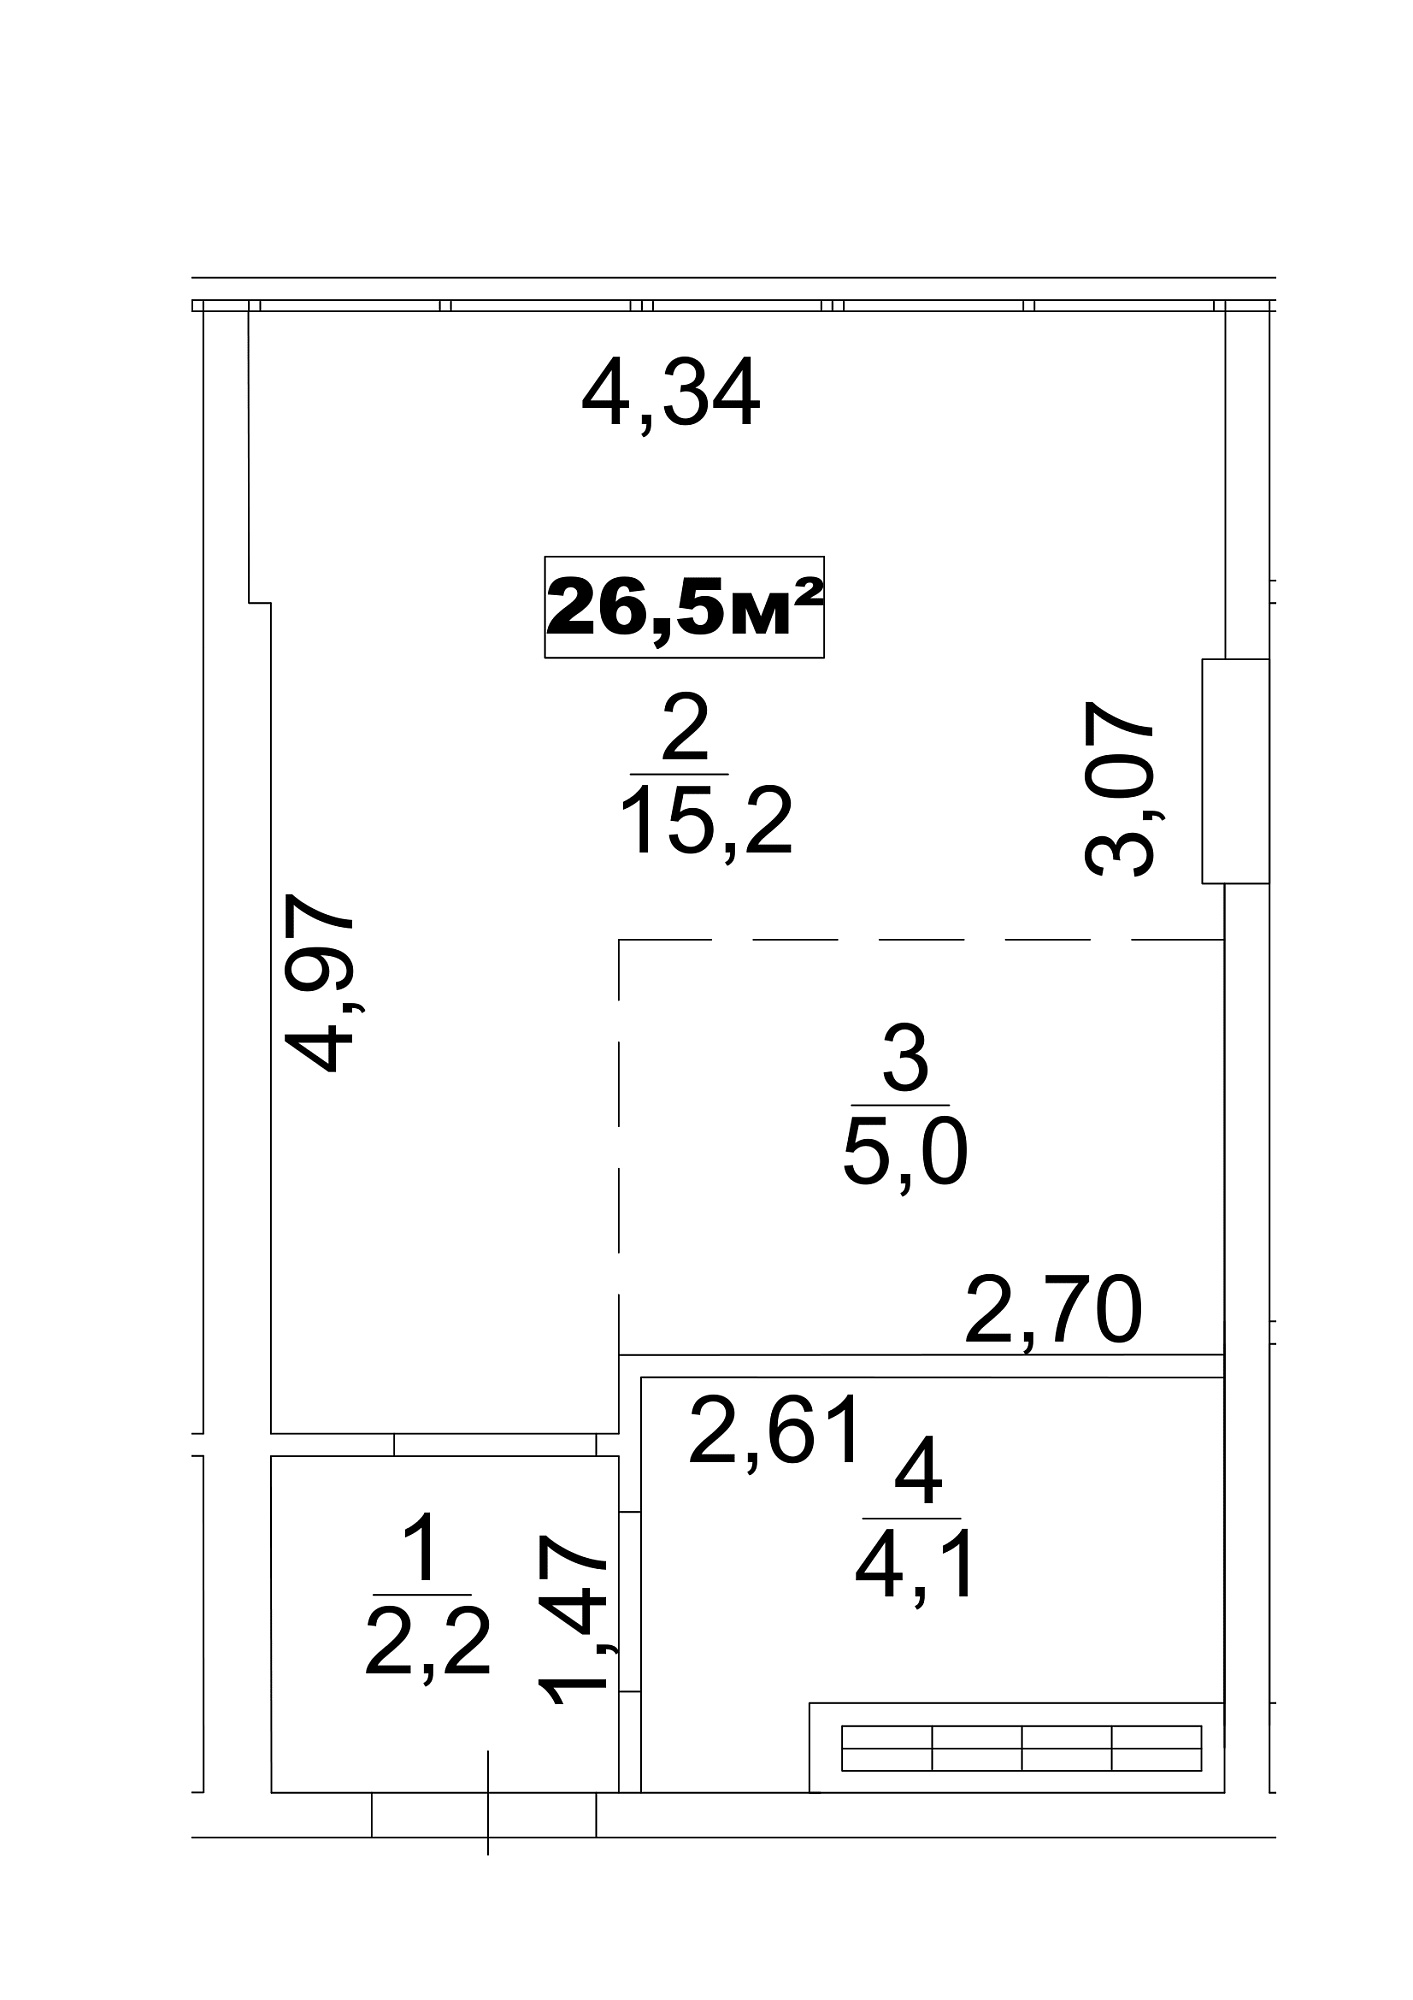 Планування Smart-квартира площею 26.5м2, AB-13-05/0036в.